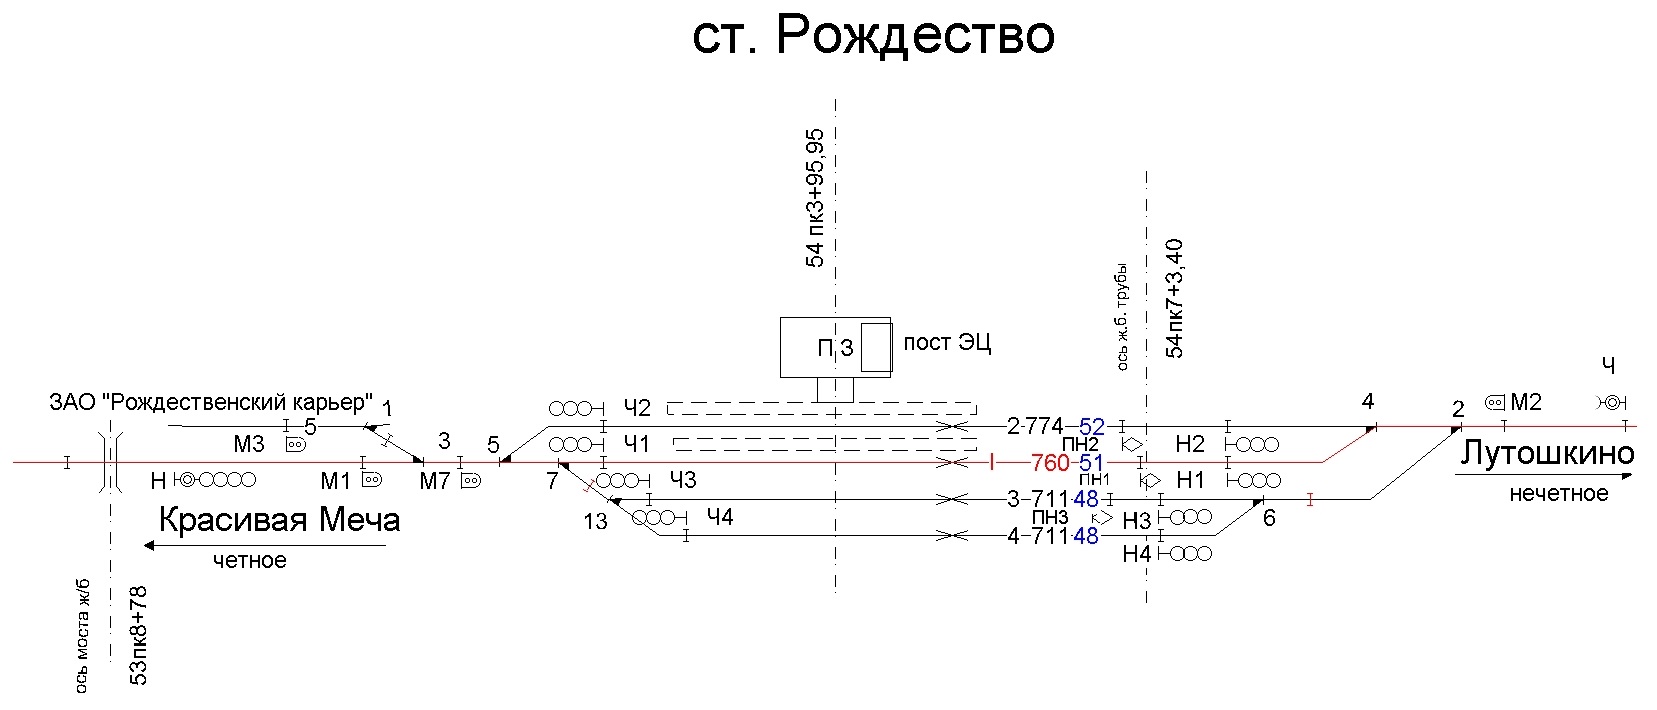 Схематический план станции Будогощь